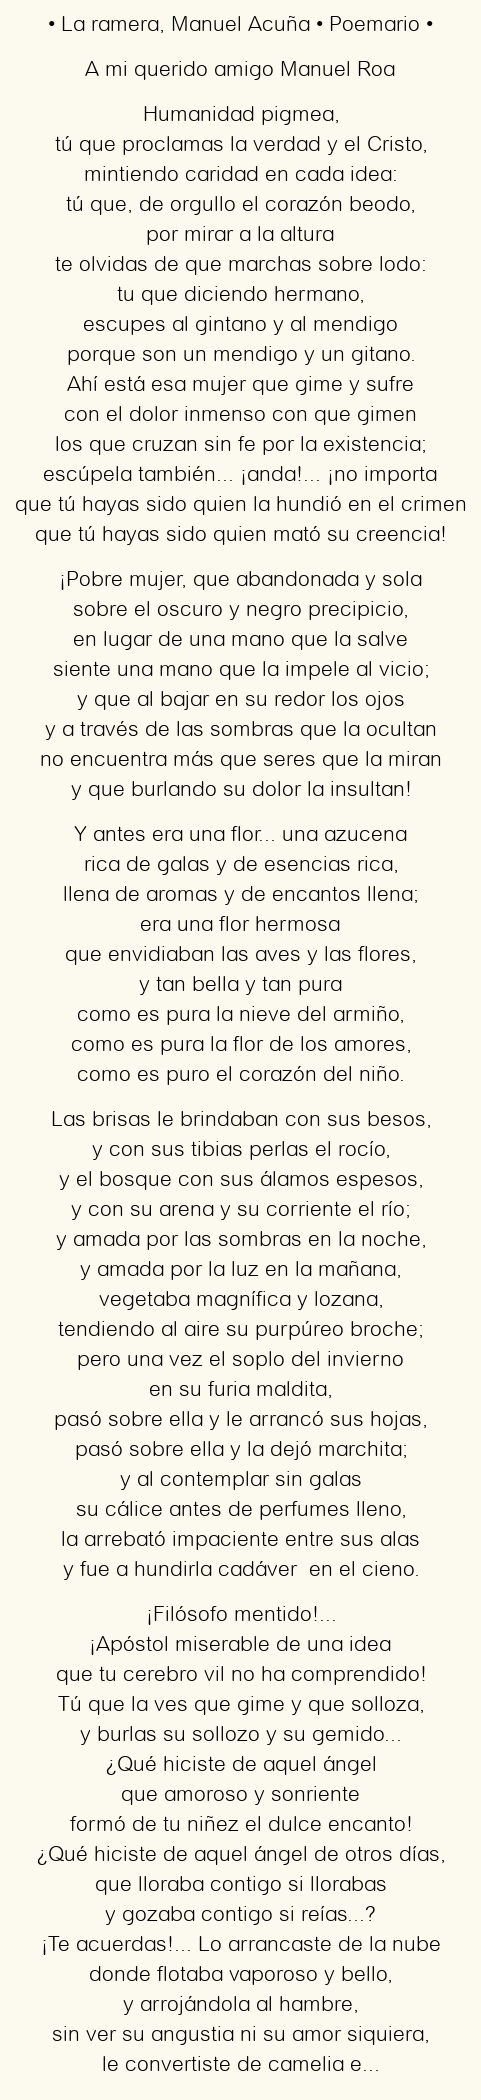 Imagen con el poema La ramera, por Manuel Acuña